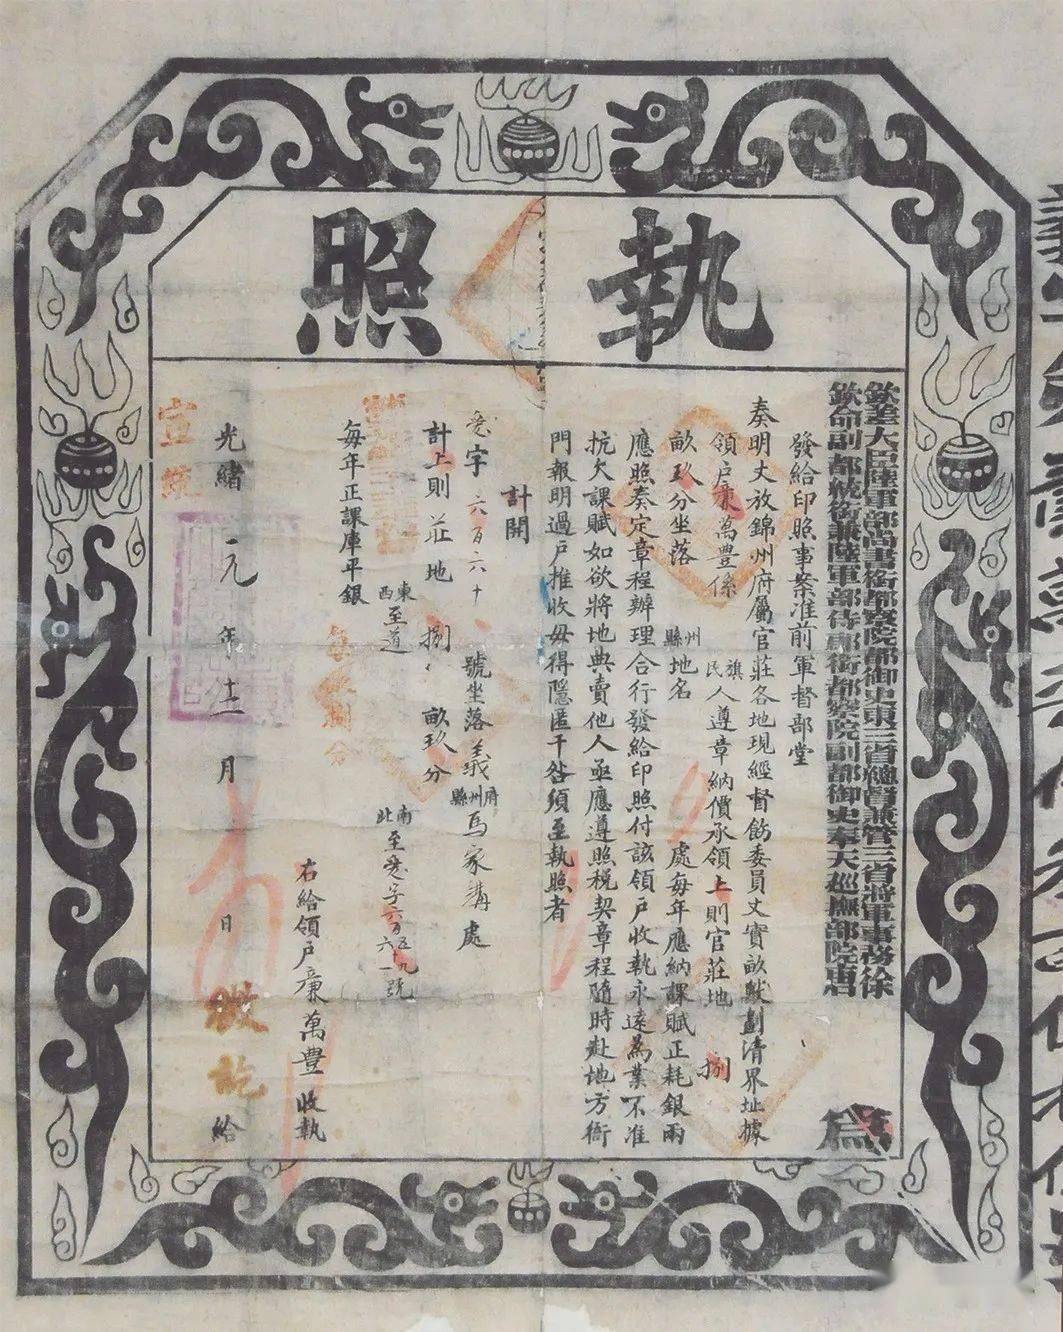 是清朝光绪皇帝御笔签发的 "龙票"而得名